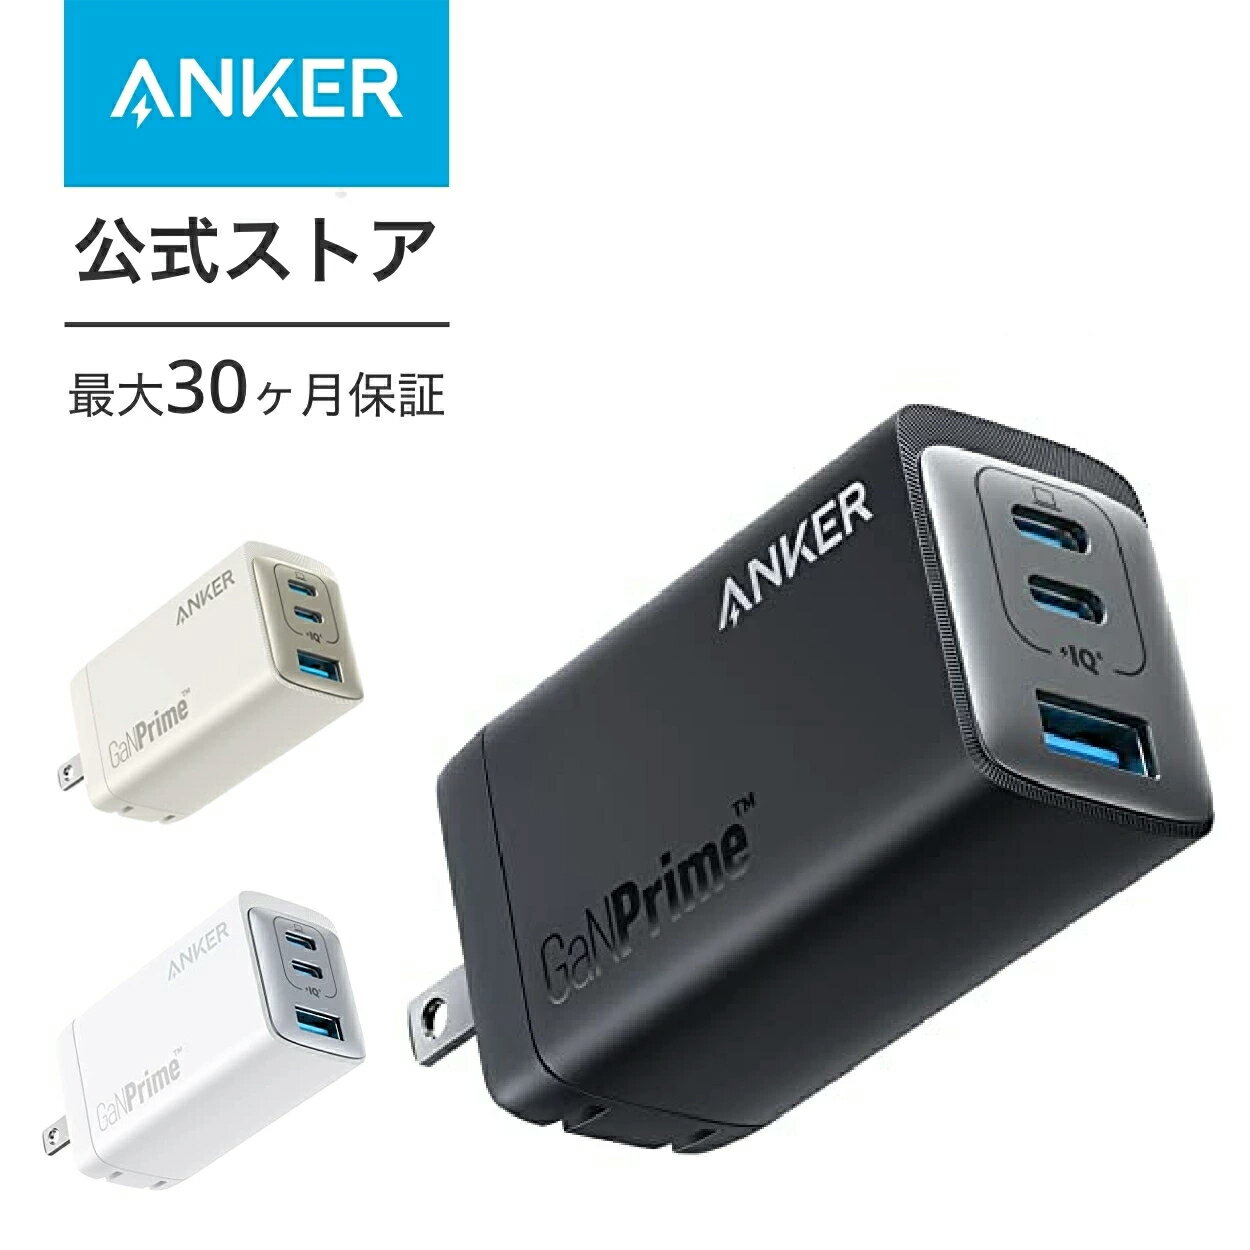 Anker 735 Charger (GaNPrime 65W) (USB PD 充電器 USB-A USB-C 3ポート)【独自技術Anker GaNPrime 採用 / PowerIQ 4.0 搭載 / PSE技術基準適合 / 折りたたみ式プラグ】